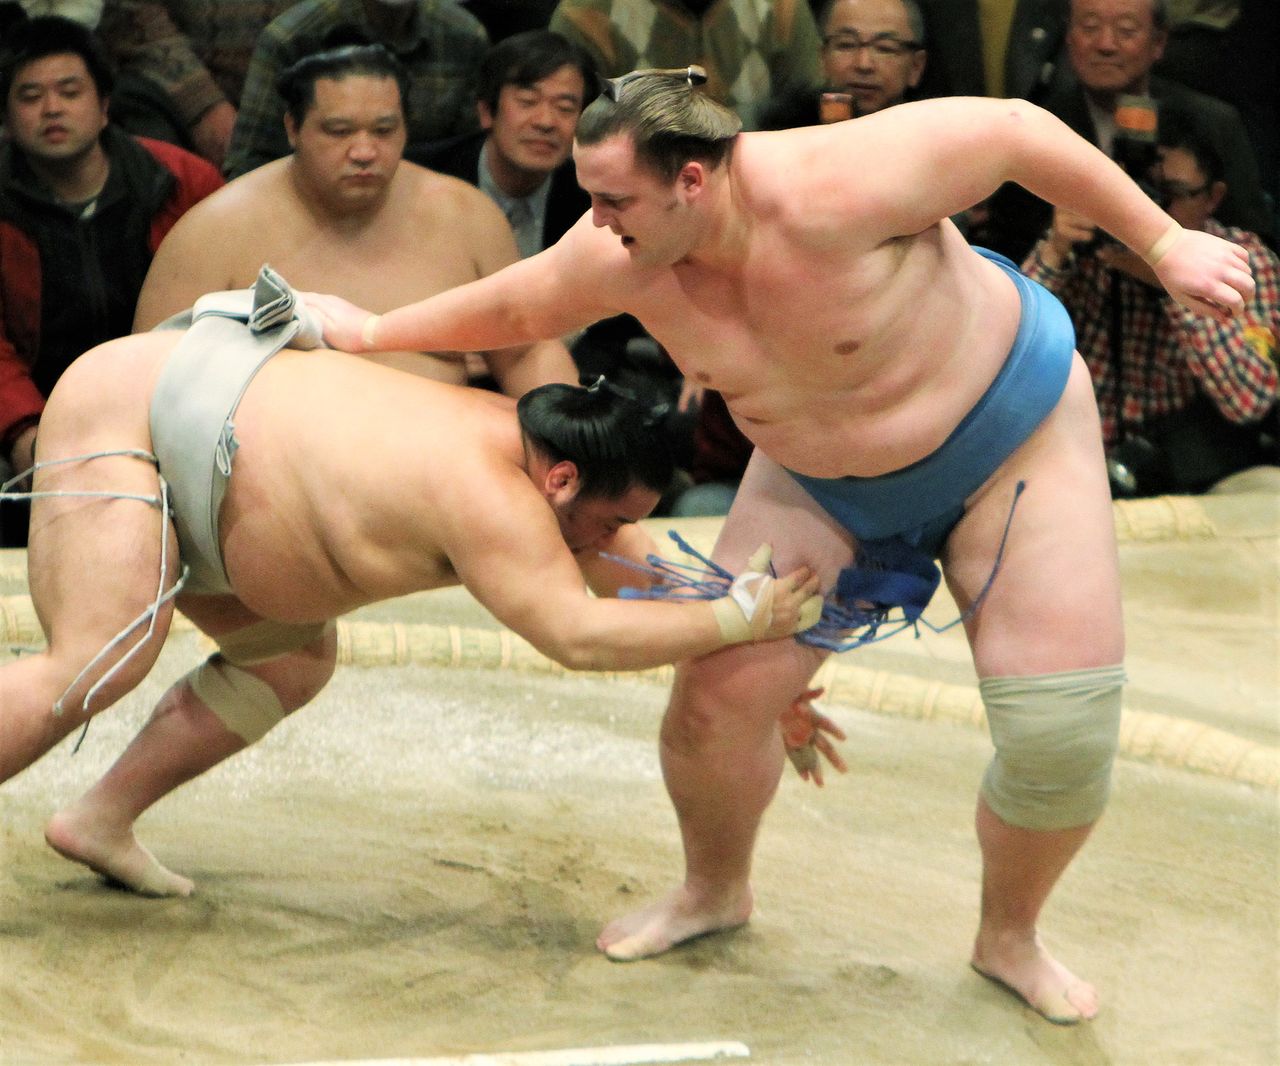 Ôsakate : saisir le mawashi de l'adversaire par-dessus l'épaule et le projeter en le soulevant. Le sekiwake d'origine estonienne Baruto (à droite) remporte son match contre Kakizoe en utilisant ce kimarite inhabituel, le quatorzième jour du basho de janvier 2010 (Jiji Press).